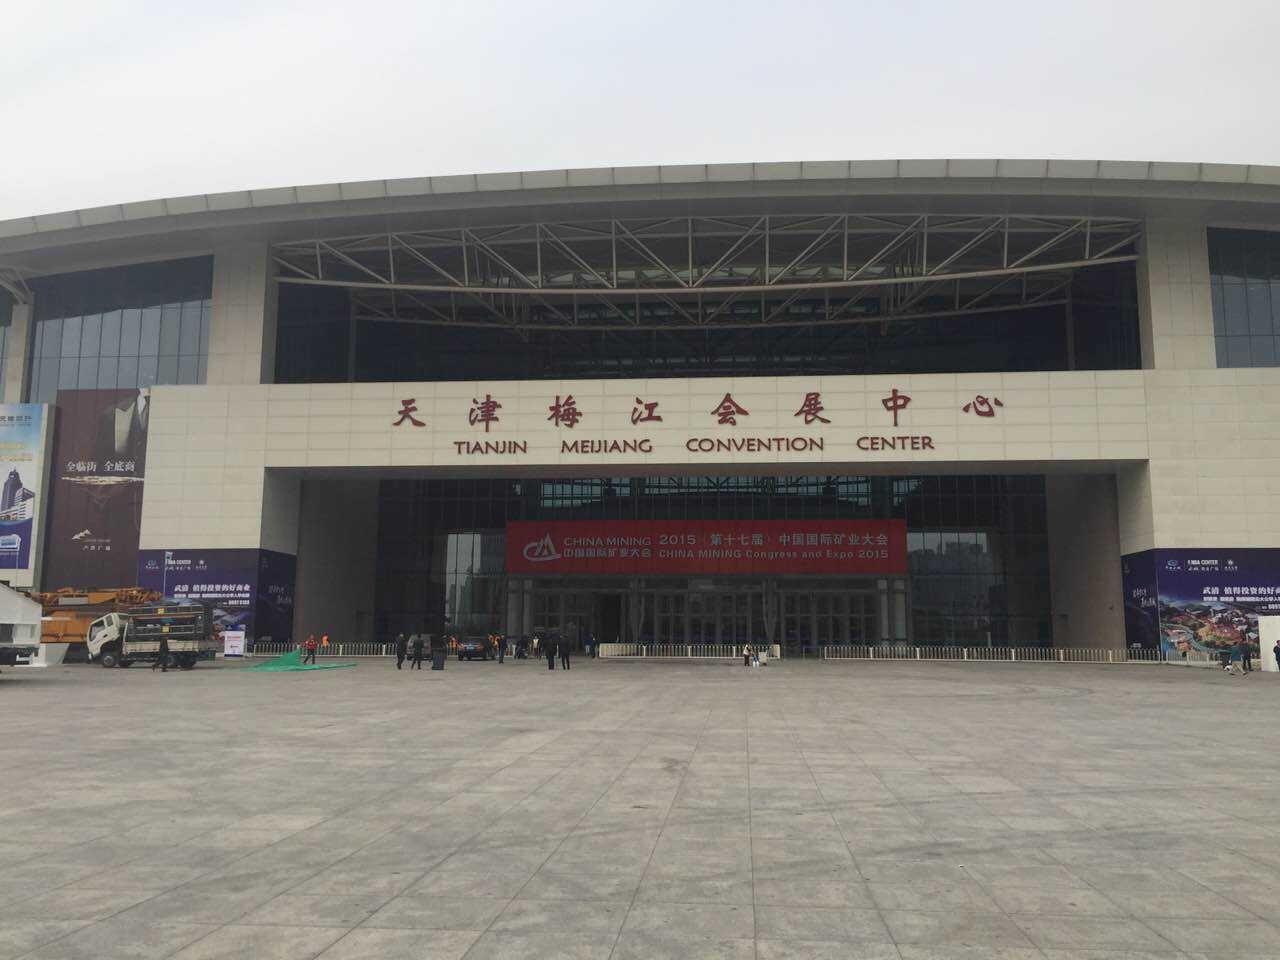 2015中国国际矿业大会图片